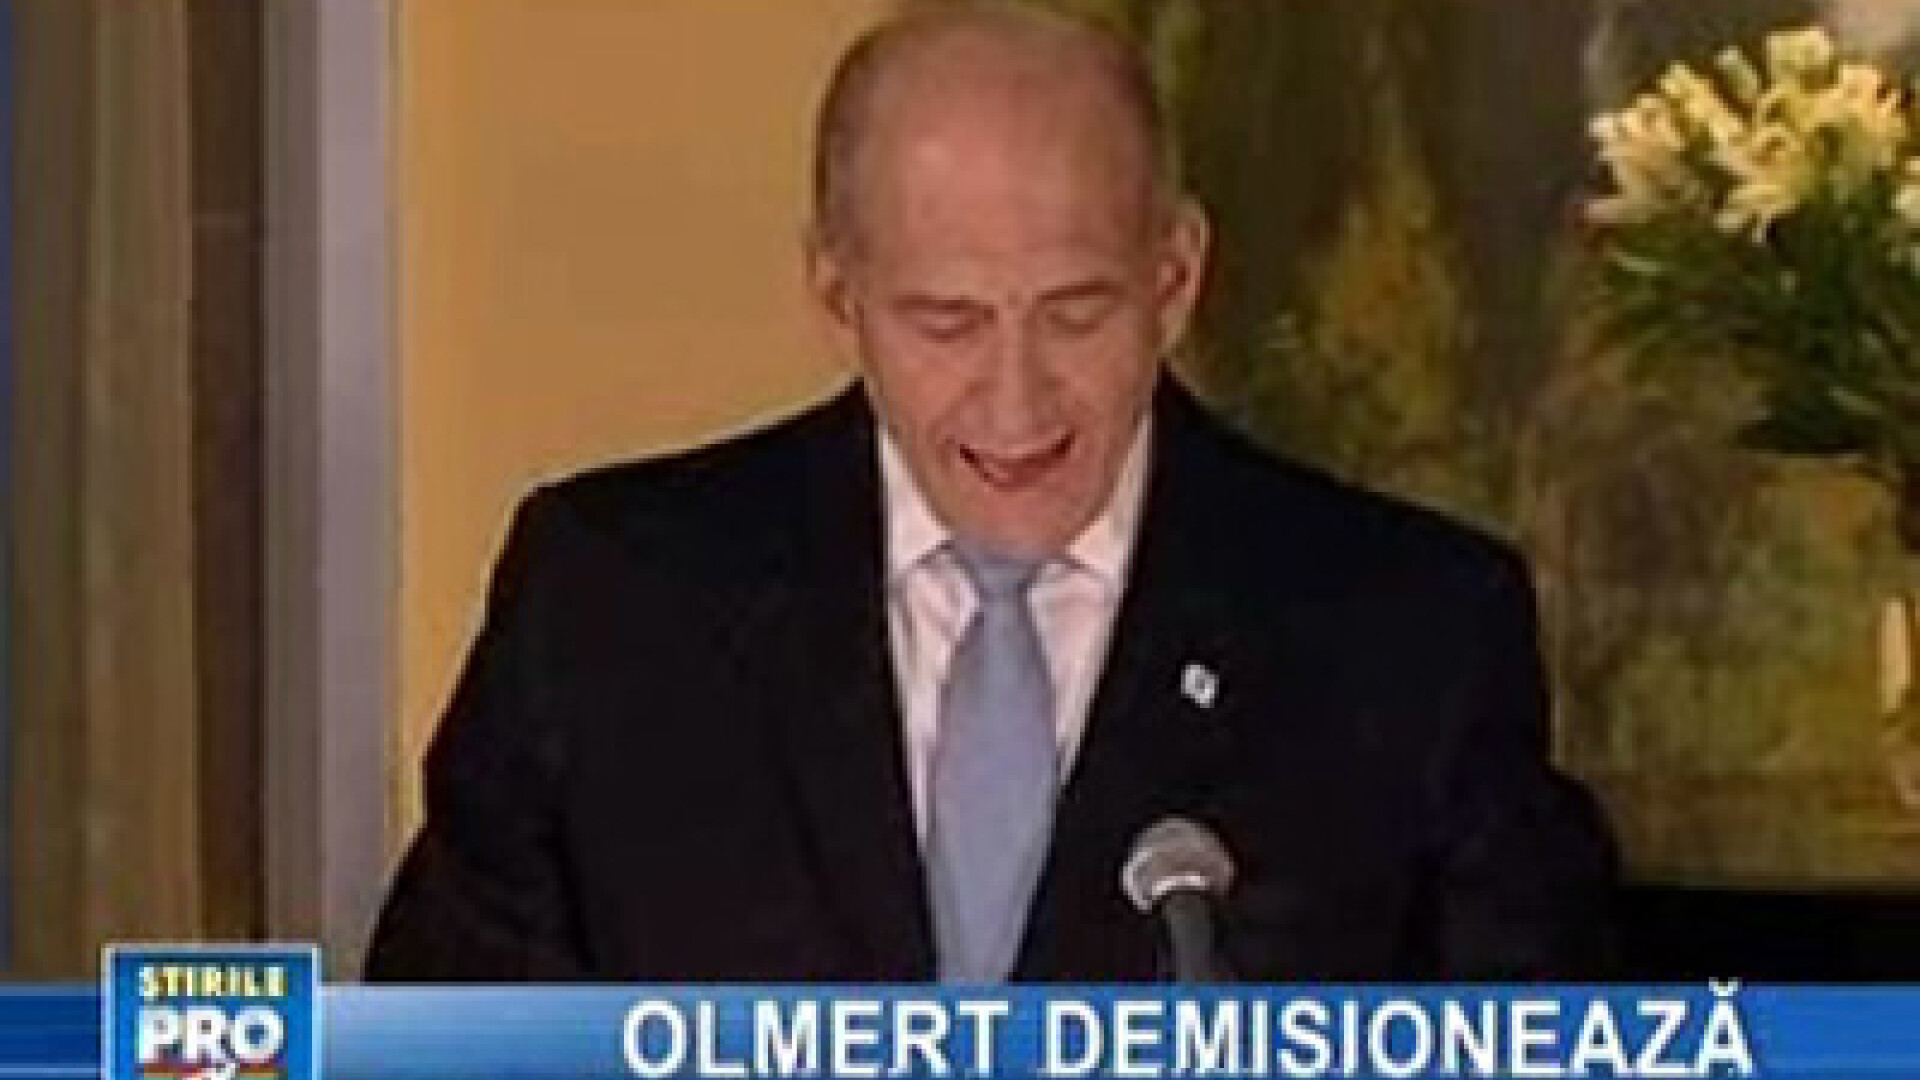 Premierul israelian Ehud Olmert a anunţat că renunţă la putere